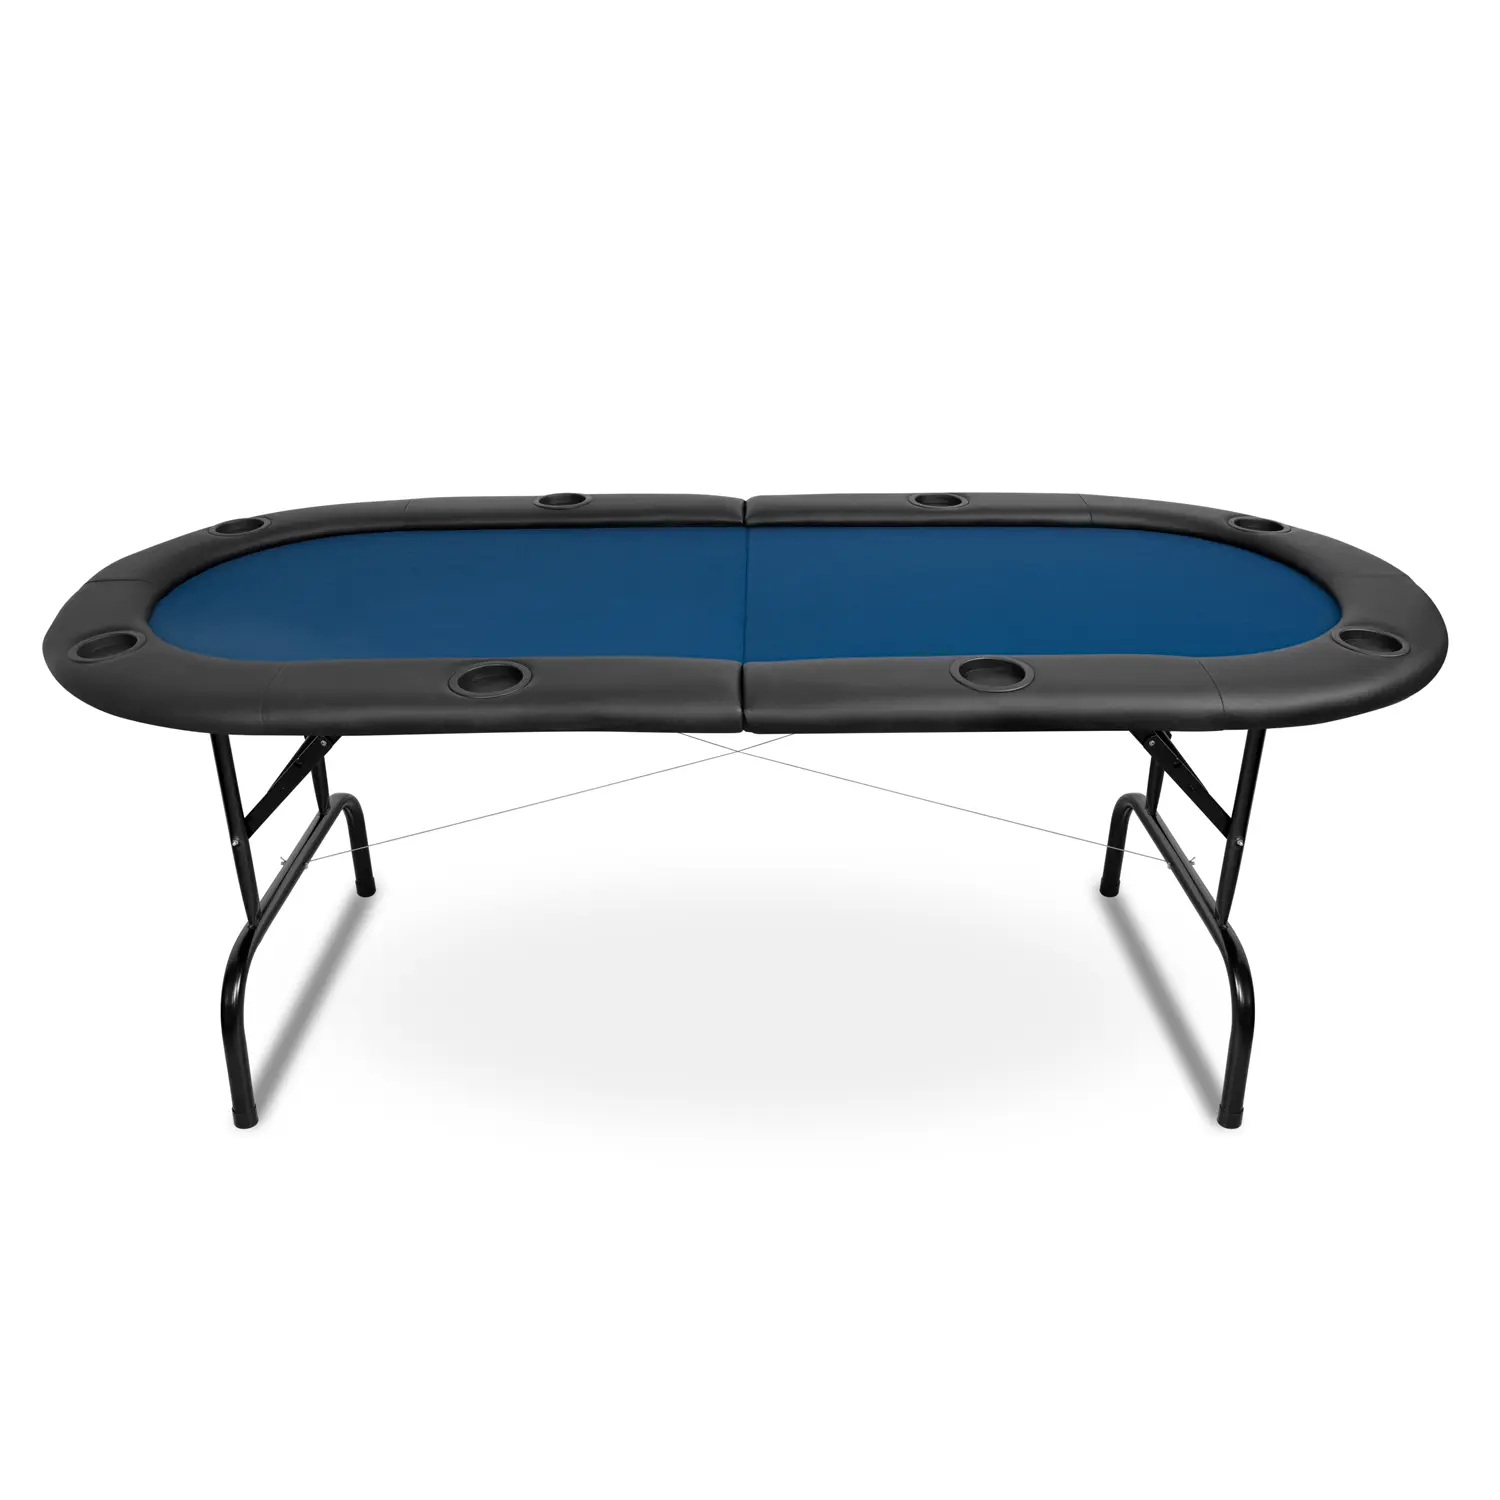 Pókerasztal 8 személyes 183cm kék színben, összecsukható (PKT202S-BLUE)